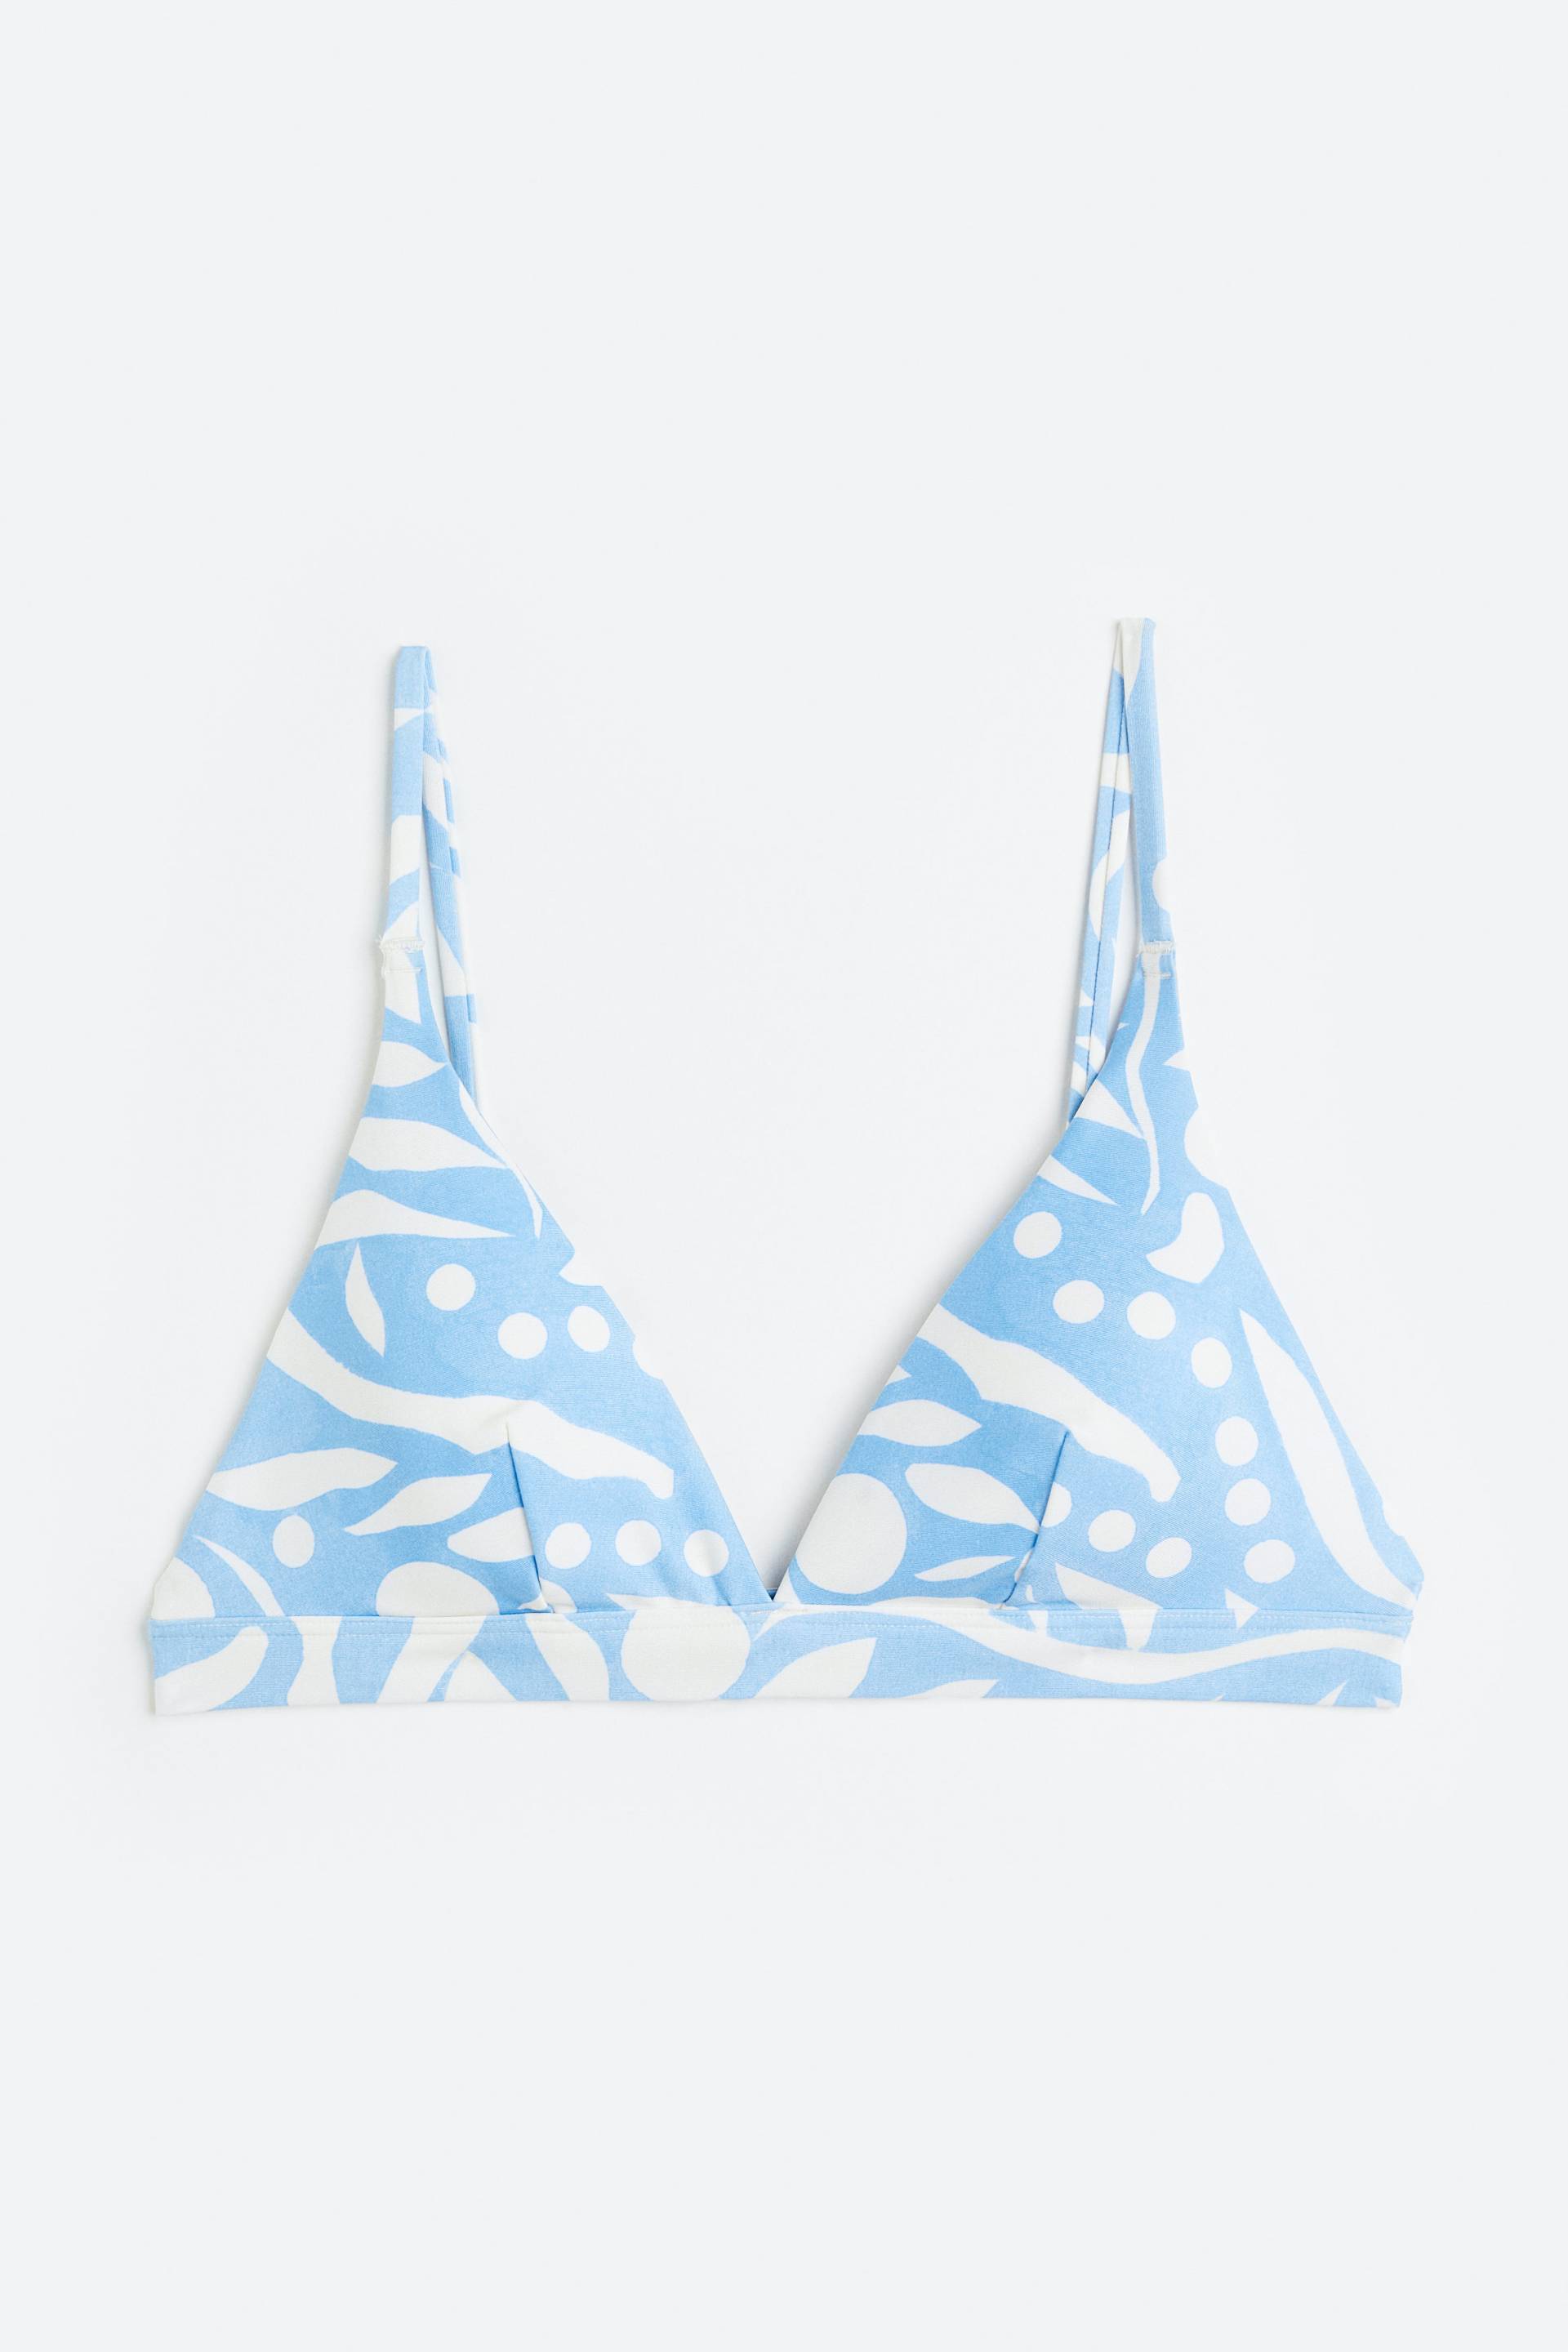 H&M Wattiertes Triangel-Bikinitop Hellblau/Gemustert, Bikini-Oberteil in Größe 32. Farbe: Light blue/patterned von H&M